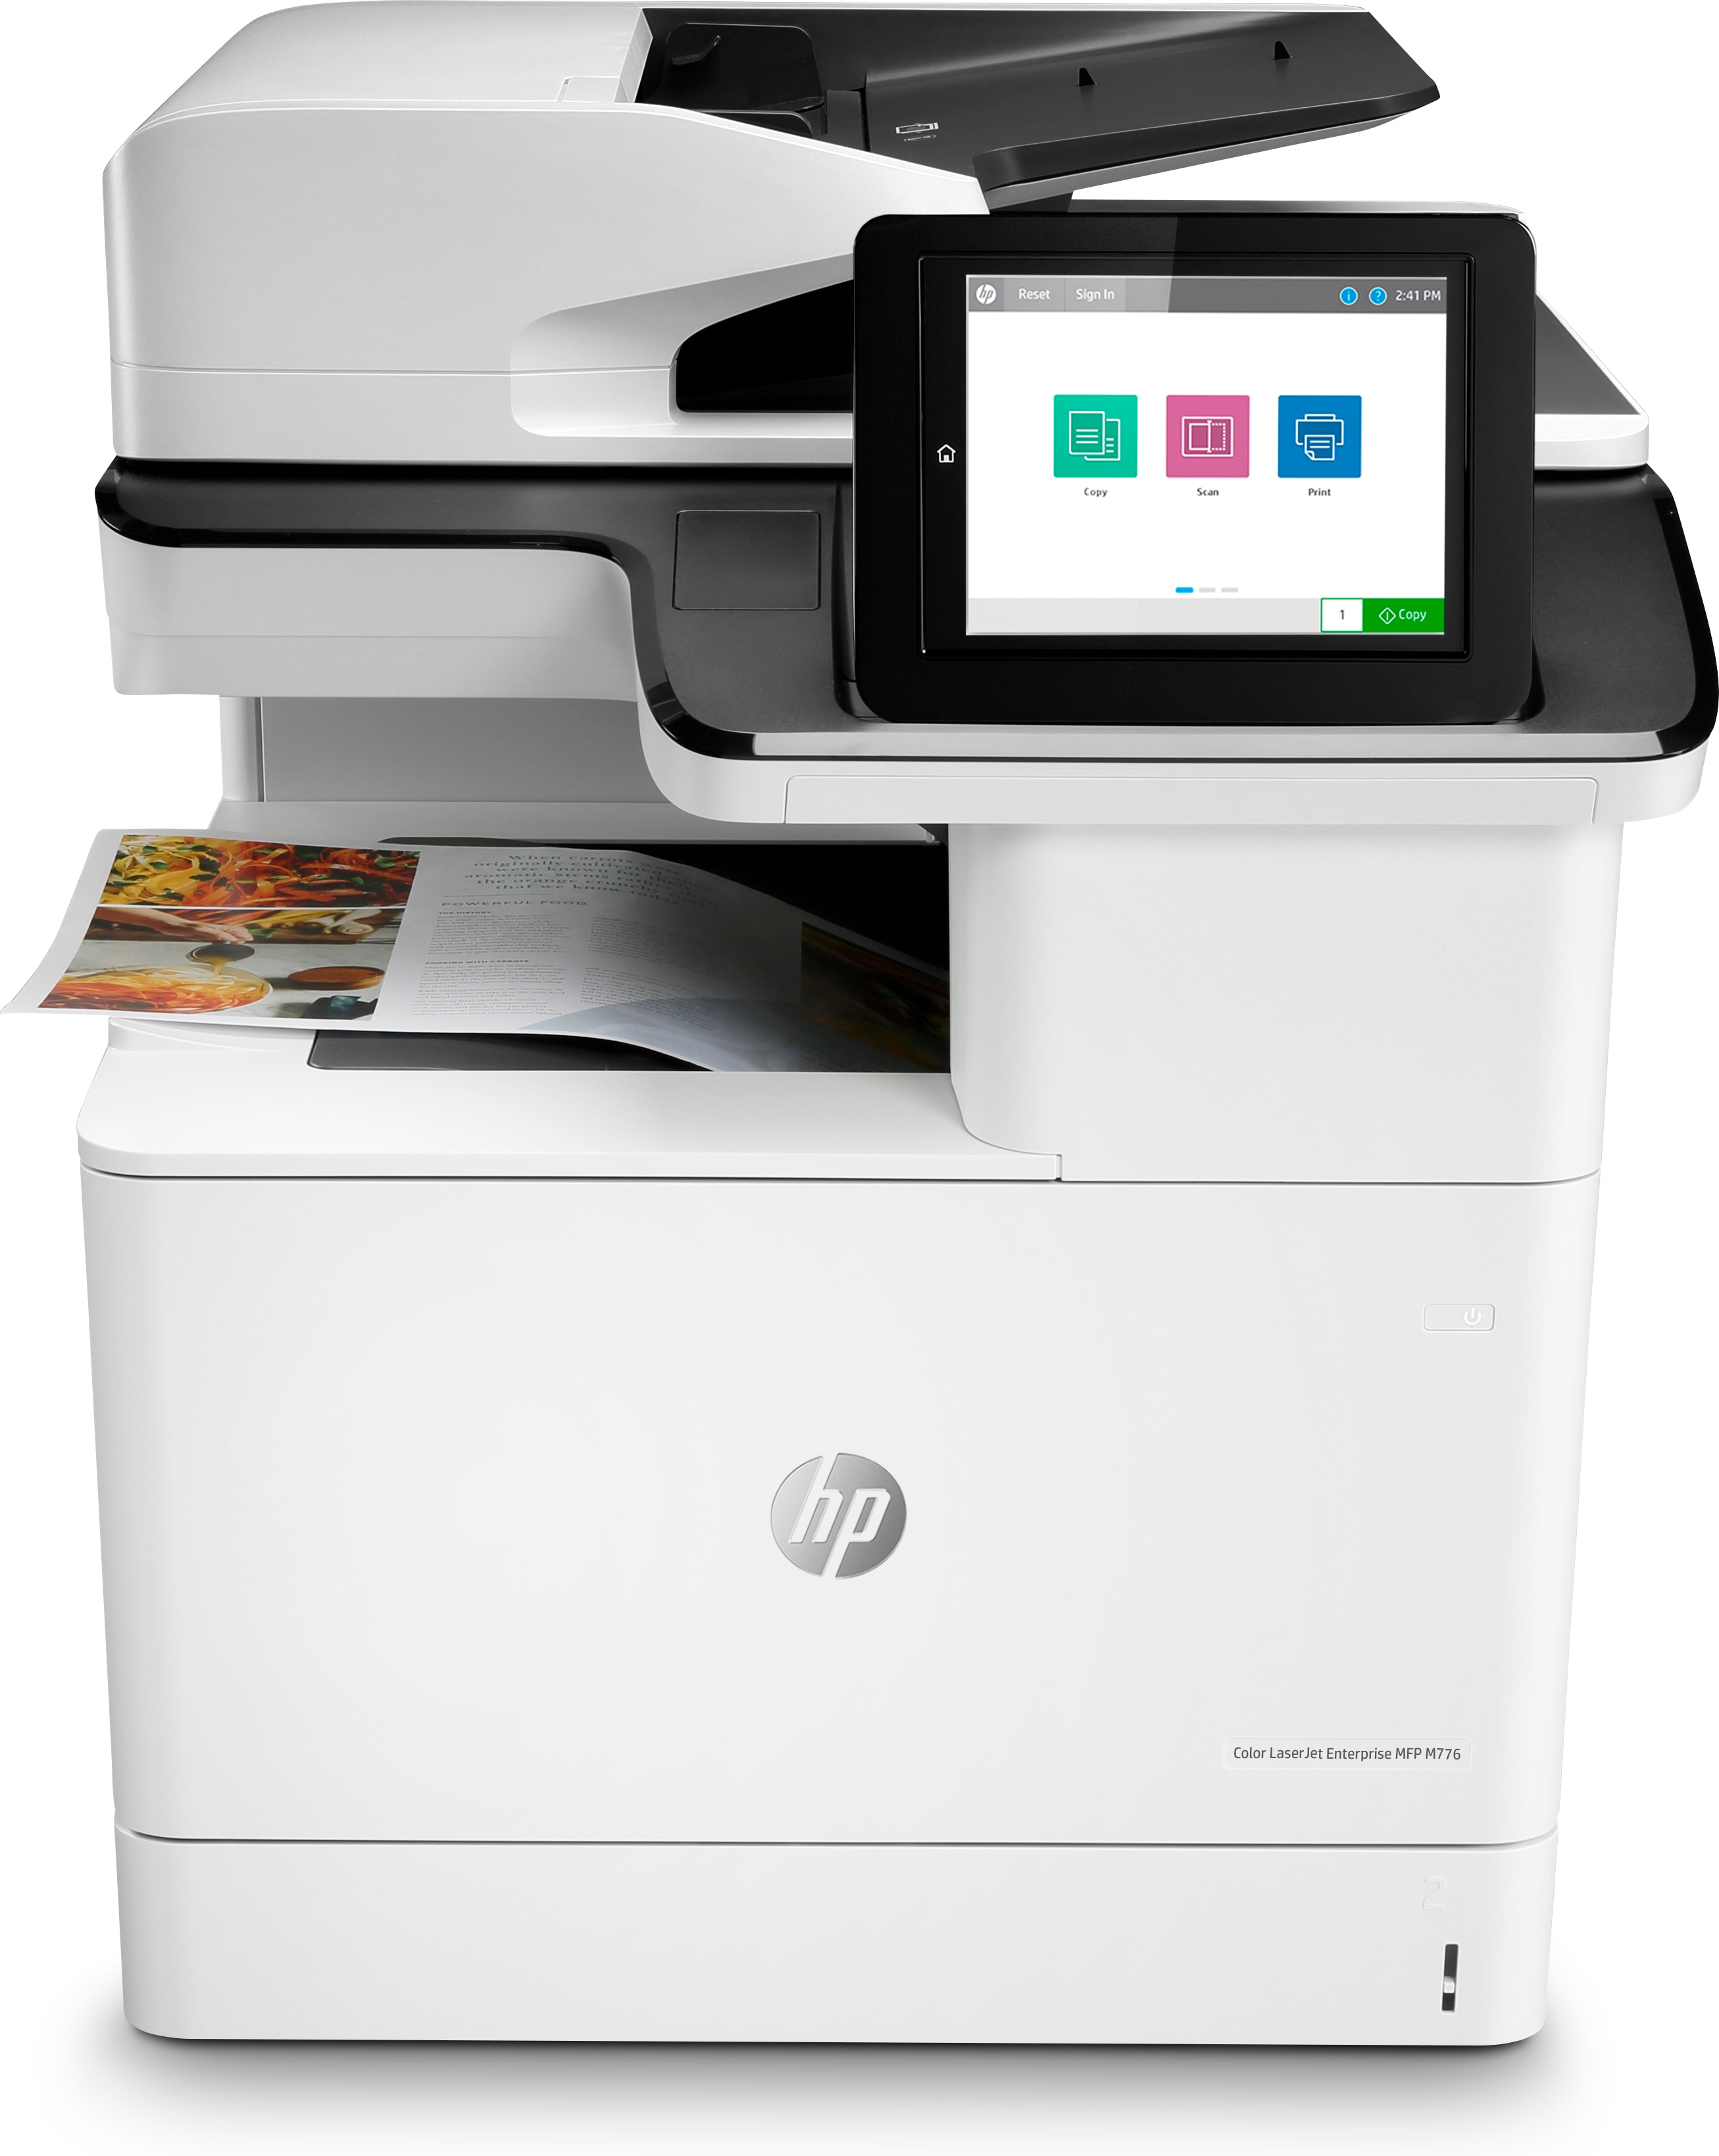 HP Color LaserJet Enterprise MFP M776dn, Skriv ut, kopiera, skanna och faxa (tillval), Dubbelsidig utskrift; Dubbelsidig skanning; Skanna till e-post